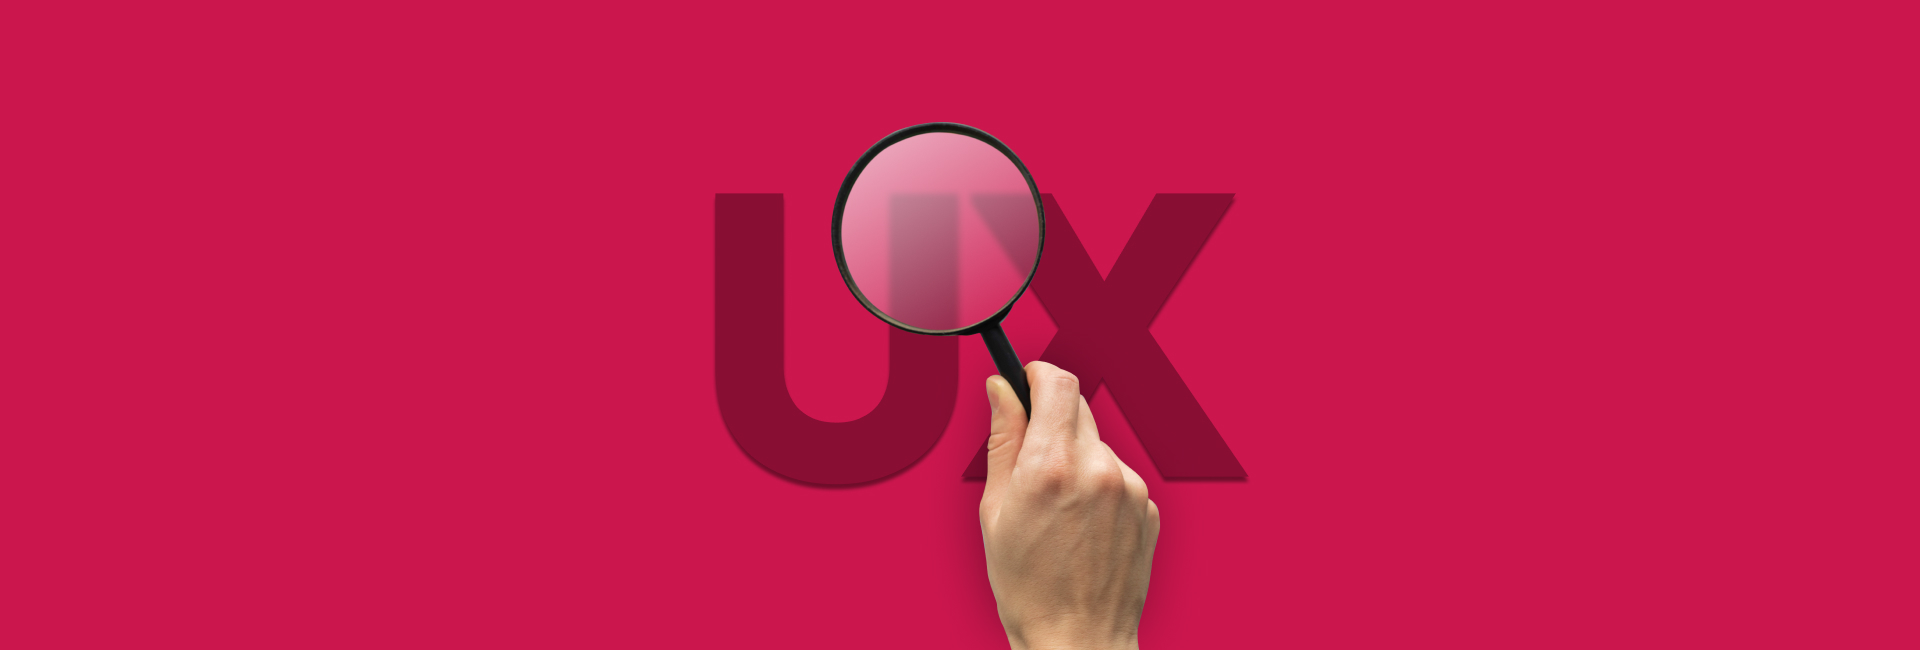 Tìm hiểu 9 phương pháp nghiên cứu UX - UX Research phổ biến nhất